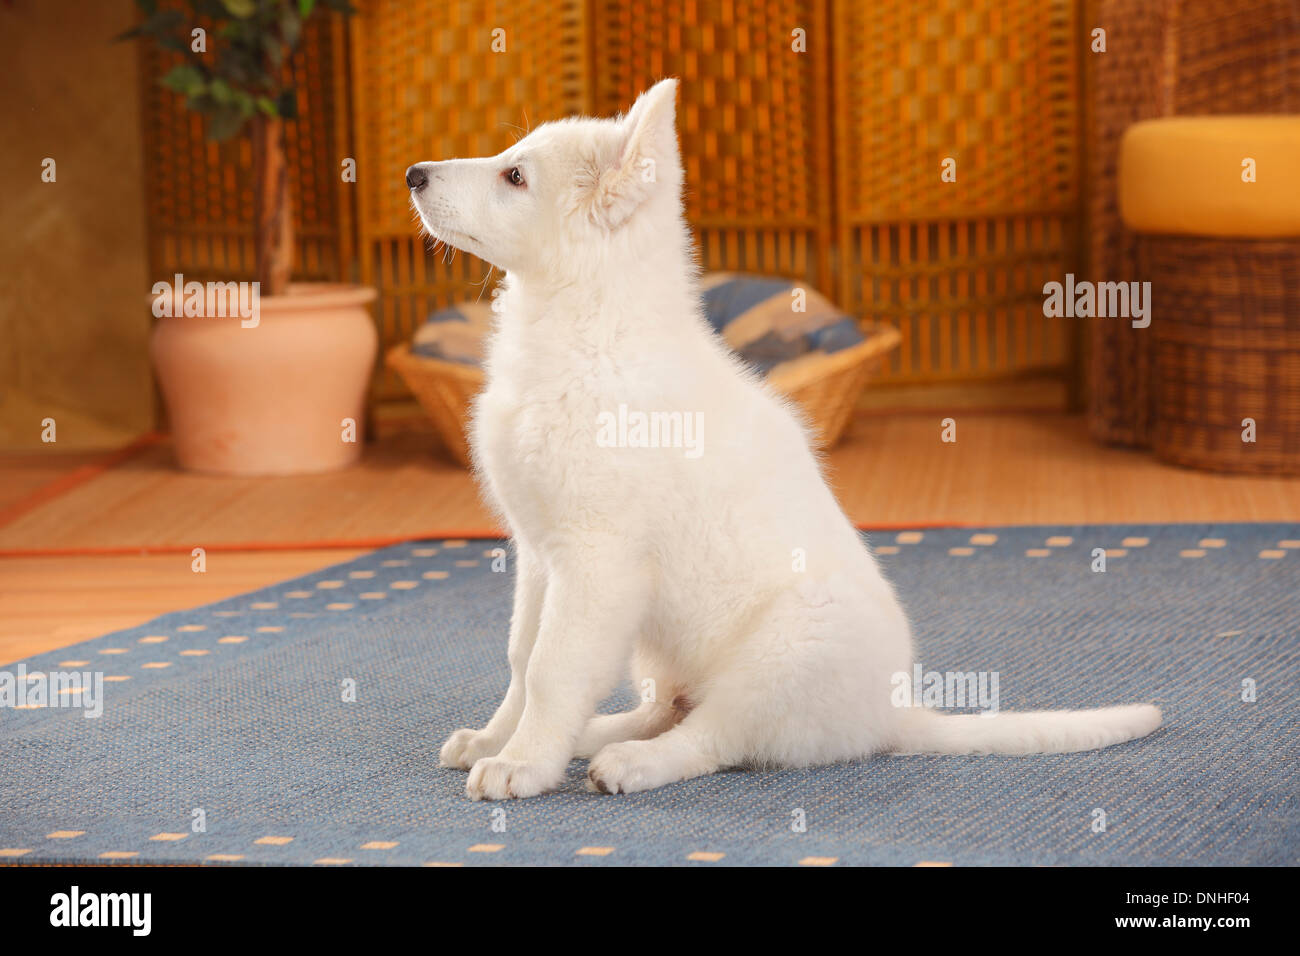 Weißer Schweizer Schäferhund, Welpe, 14 Wochen | Weisser Schweizer Schaeferhund, Welpe, 14 Wochen Stockfoto